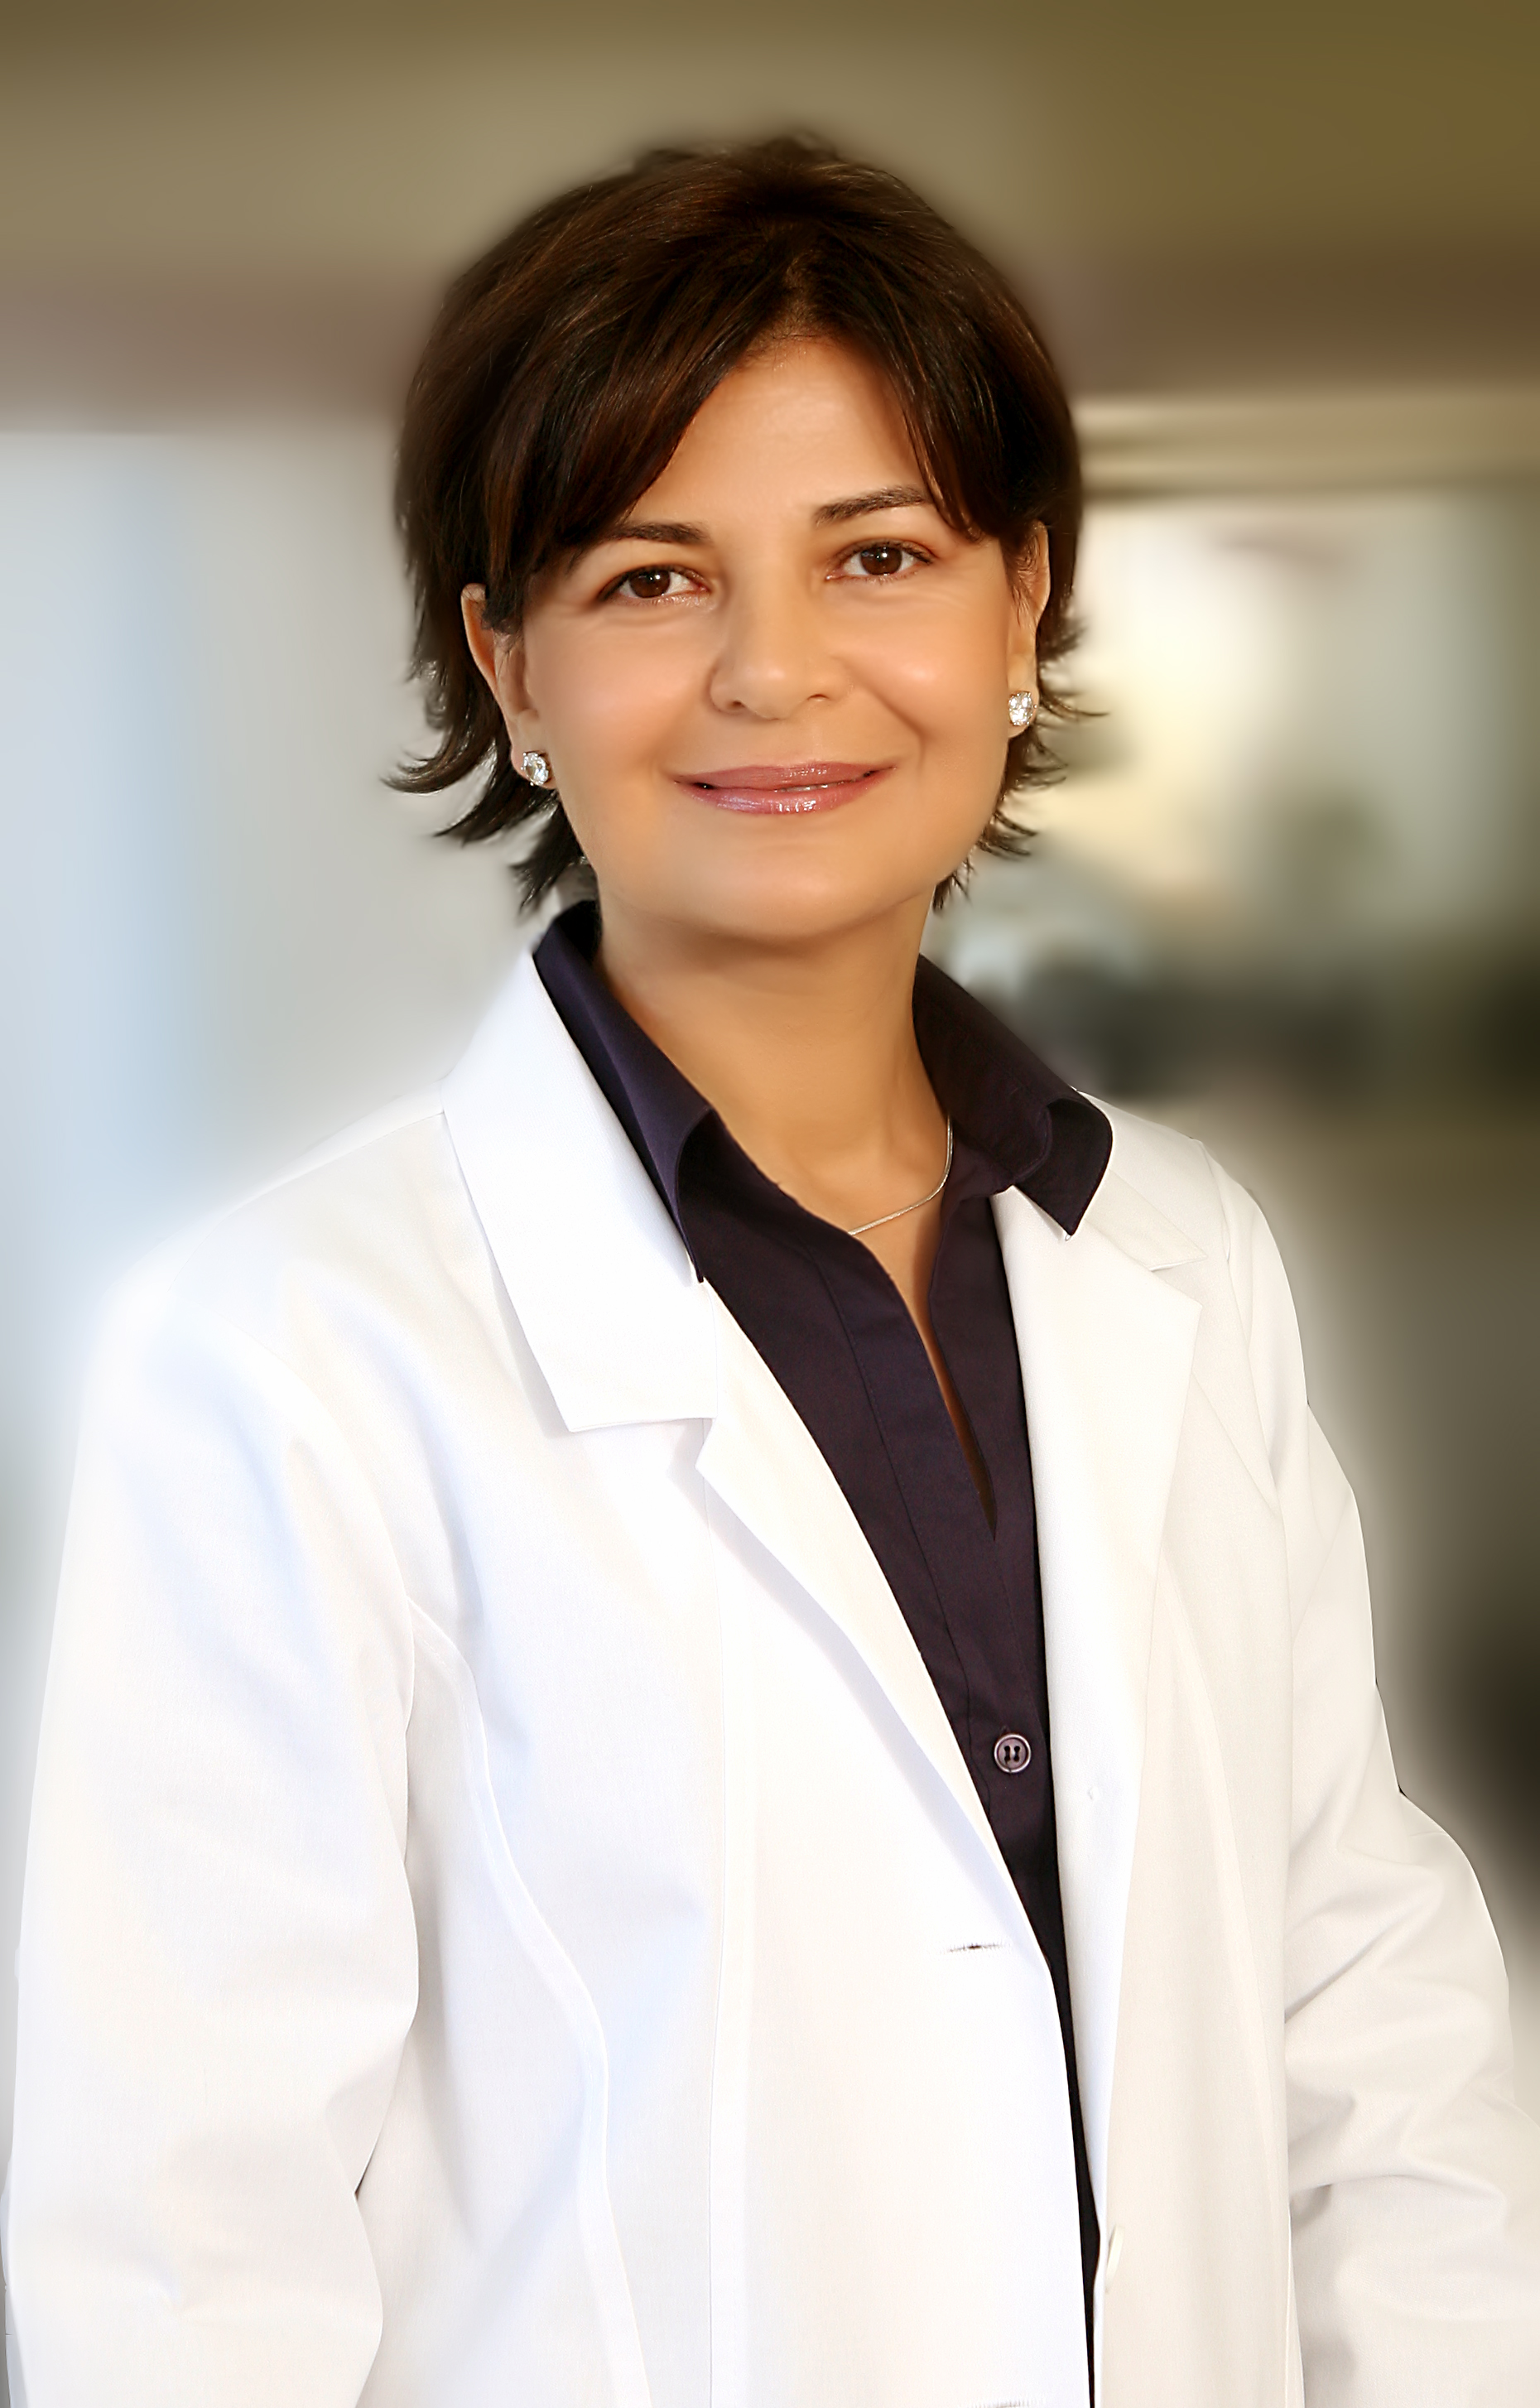 Dr. Azadeh Afzali